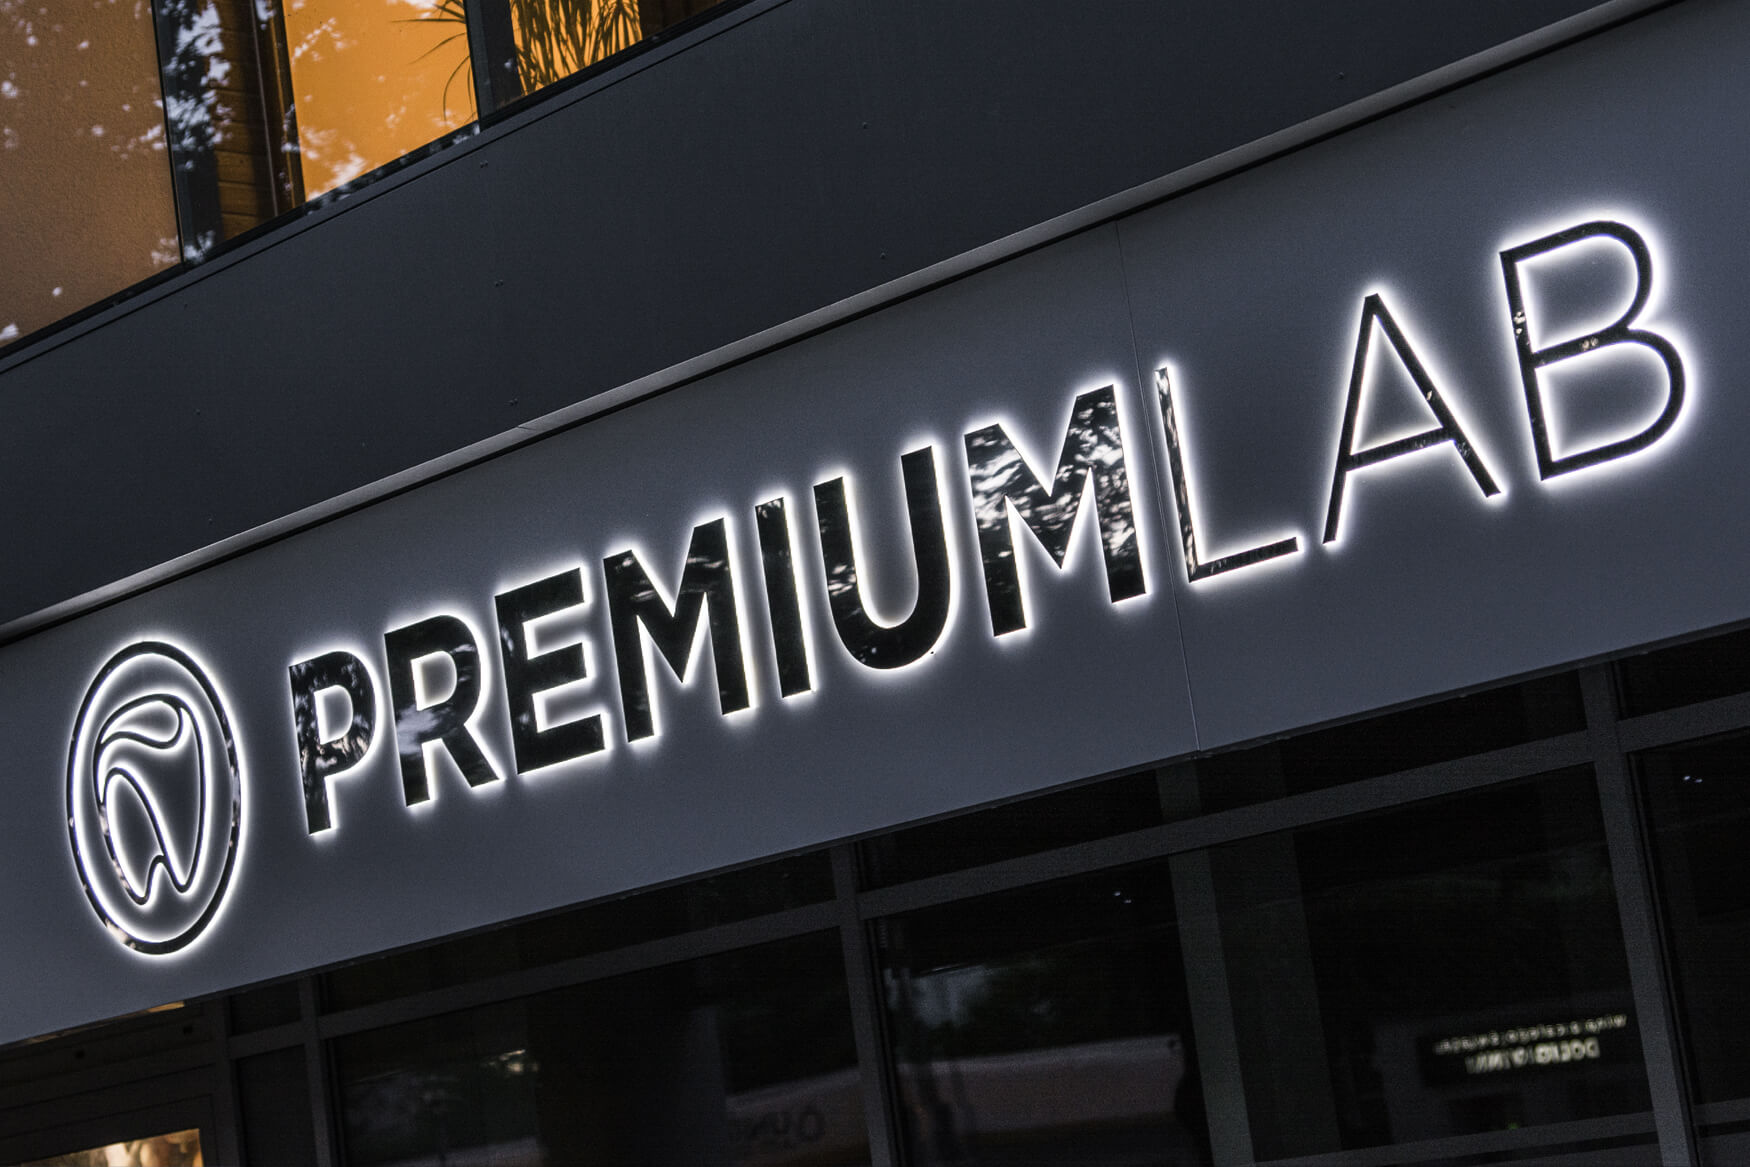 Premiumlab - Premiumlab - insegna aziendale posta su un cassone pubblicitario con lettere spaziali in metallo